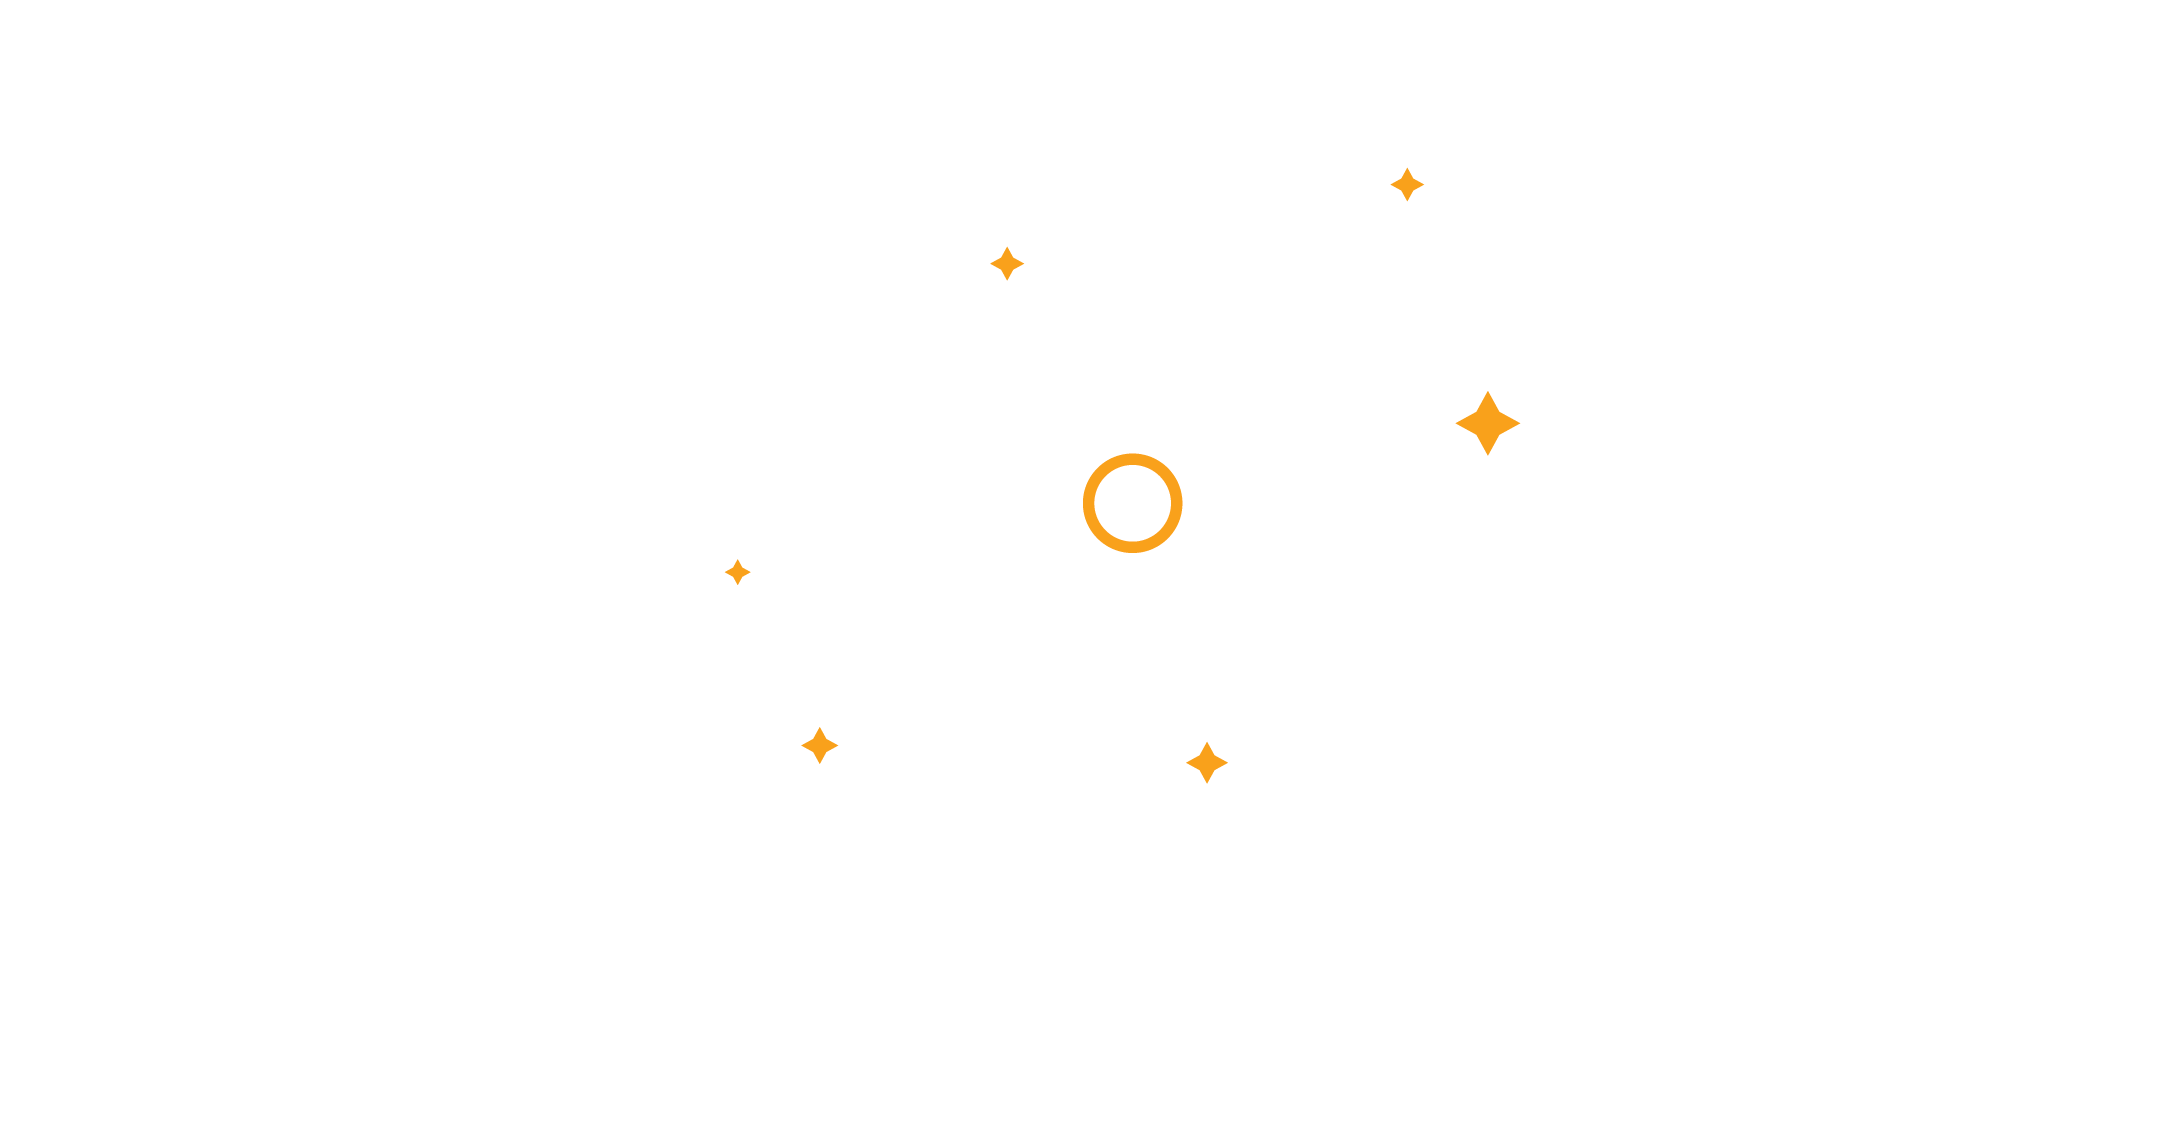 Nonprofit Symposium 2023 logo